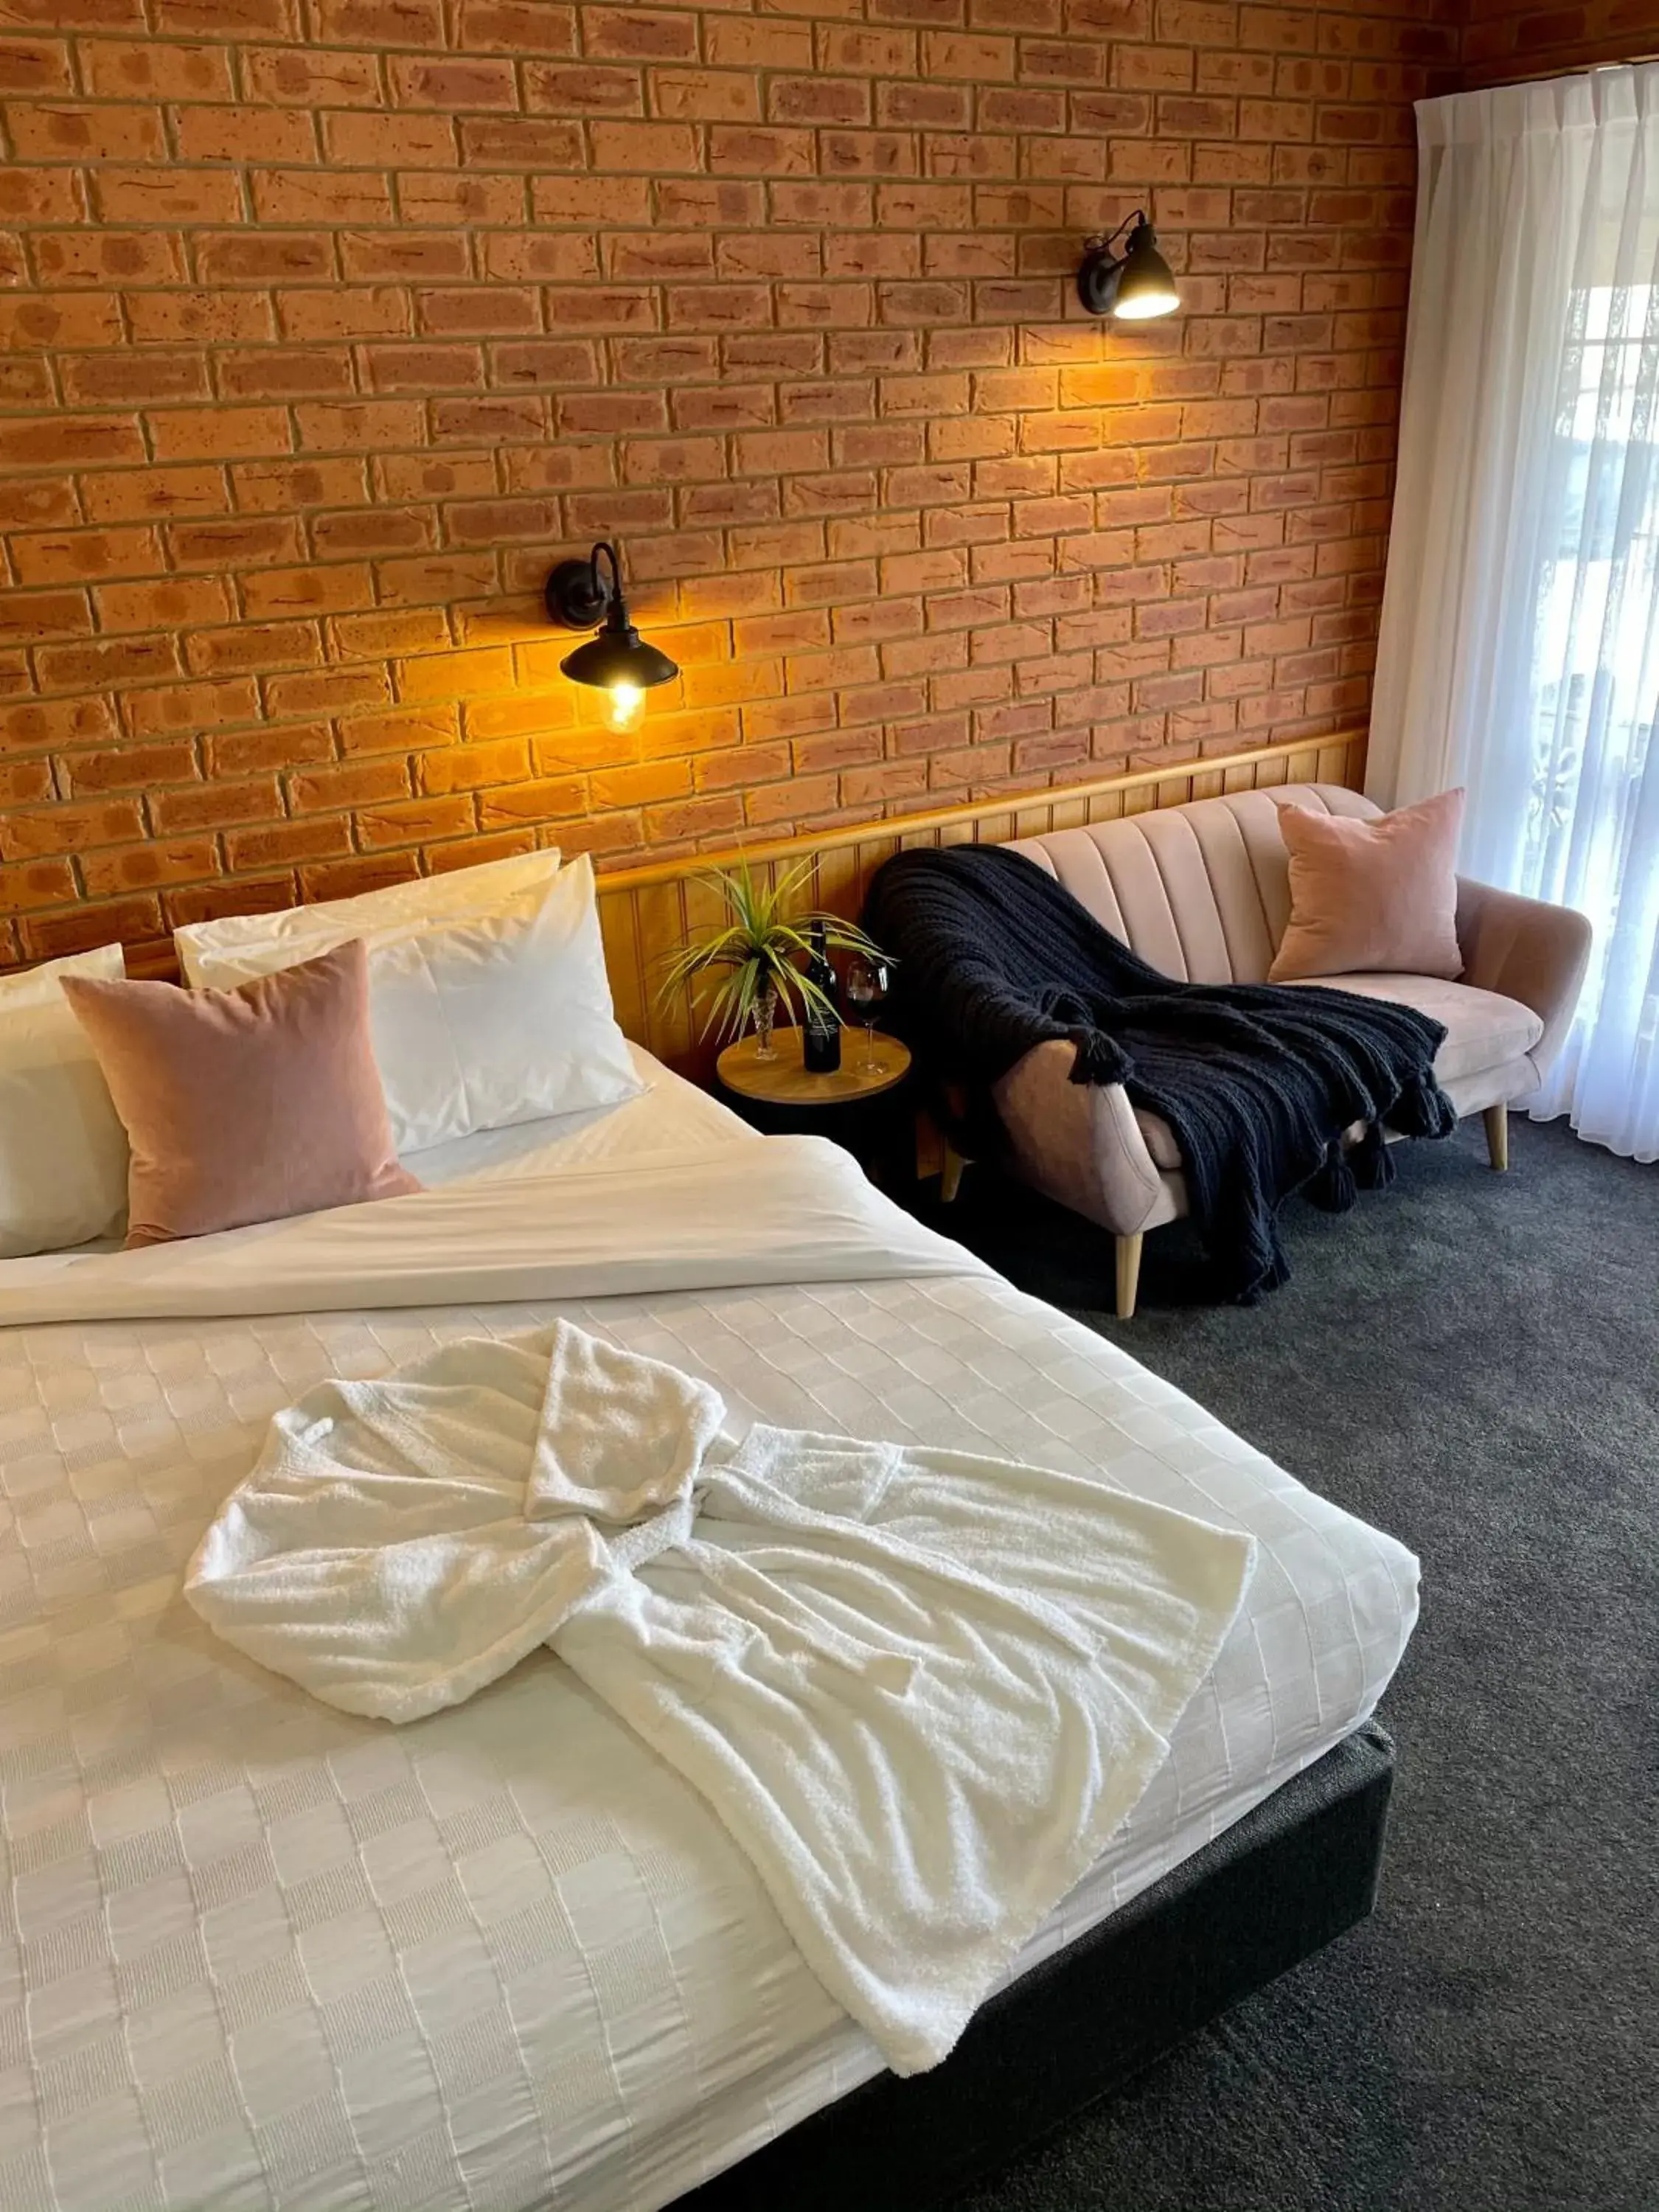 Bed in Golden River Motor Inn